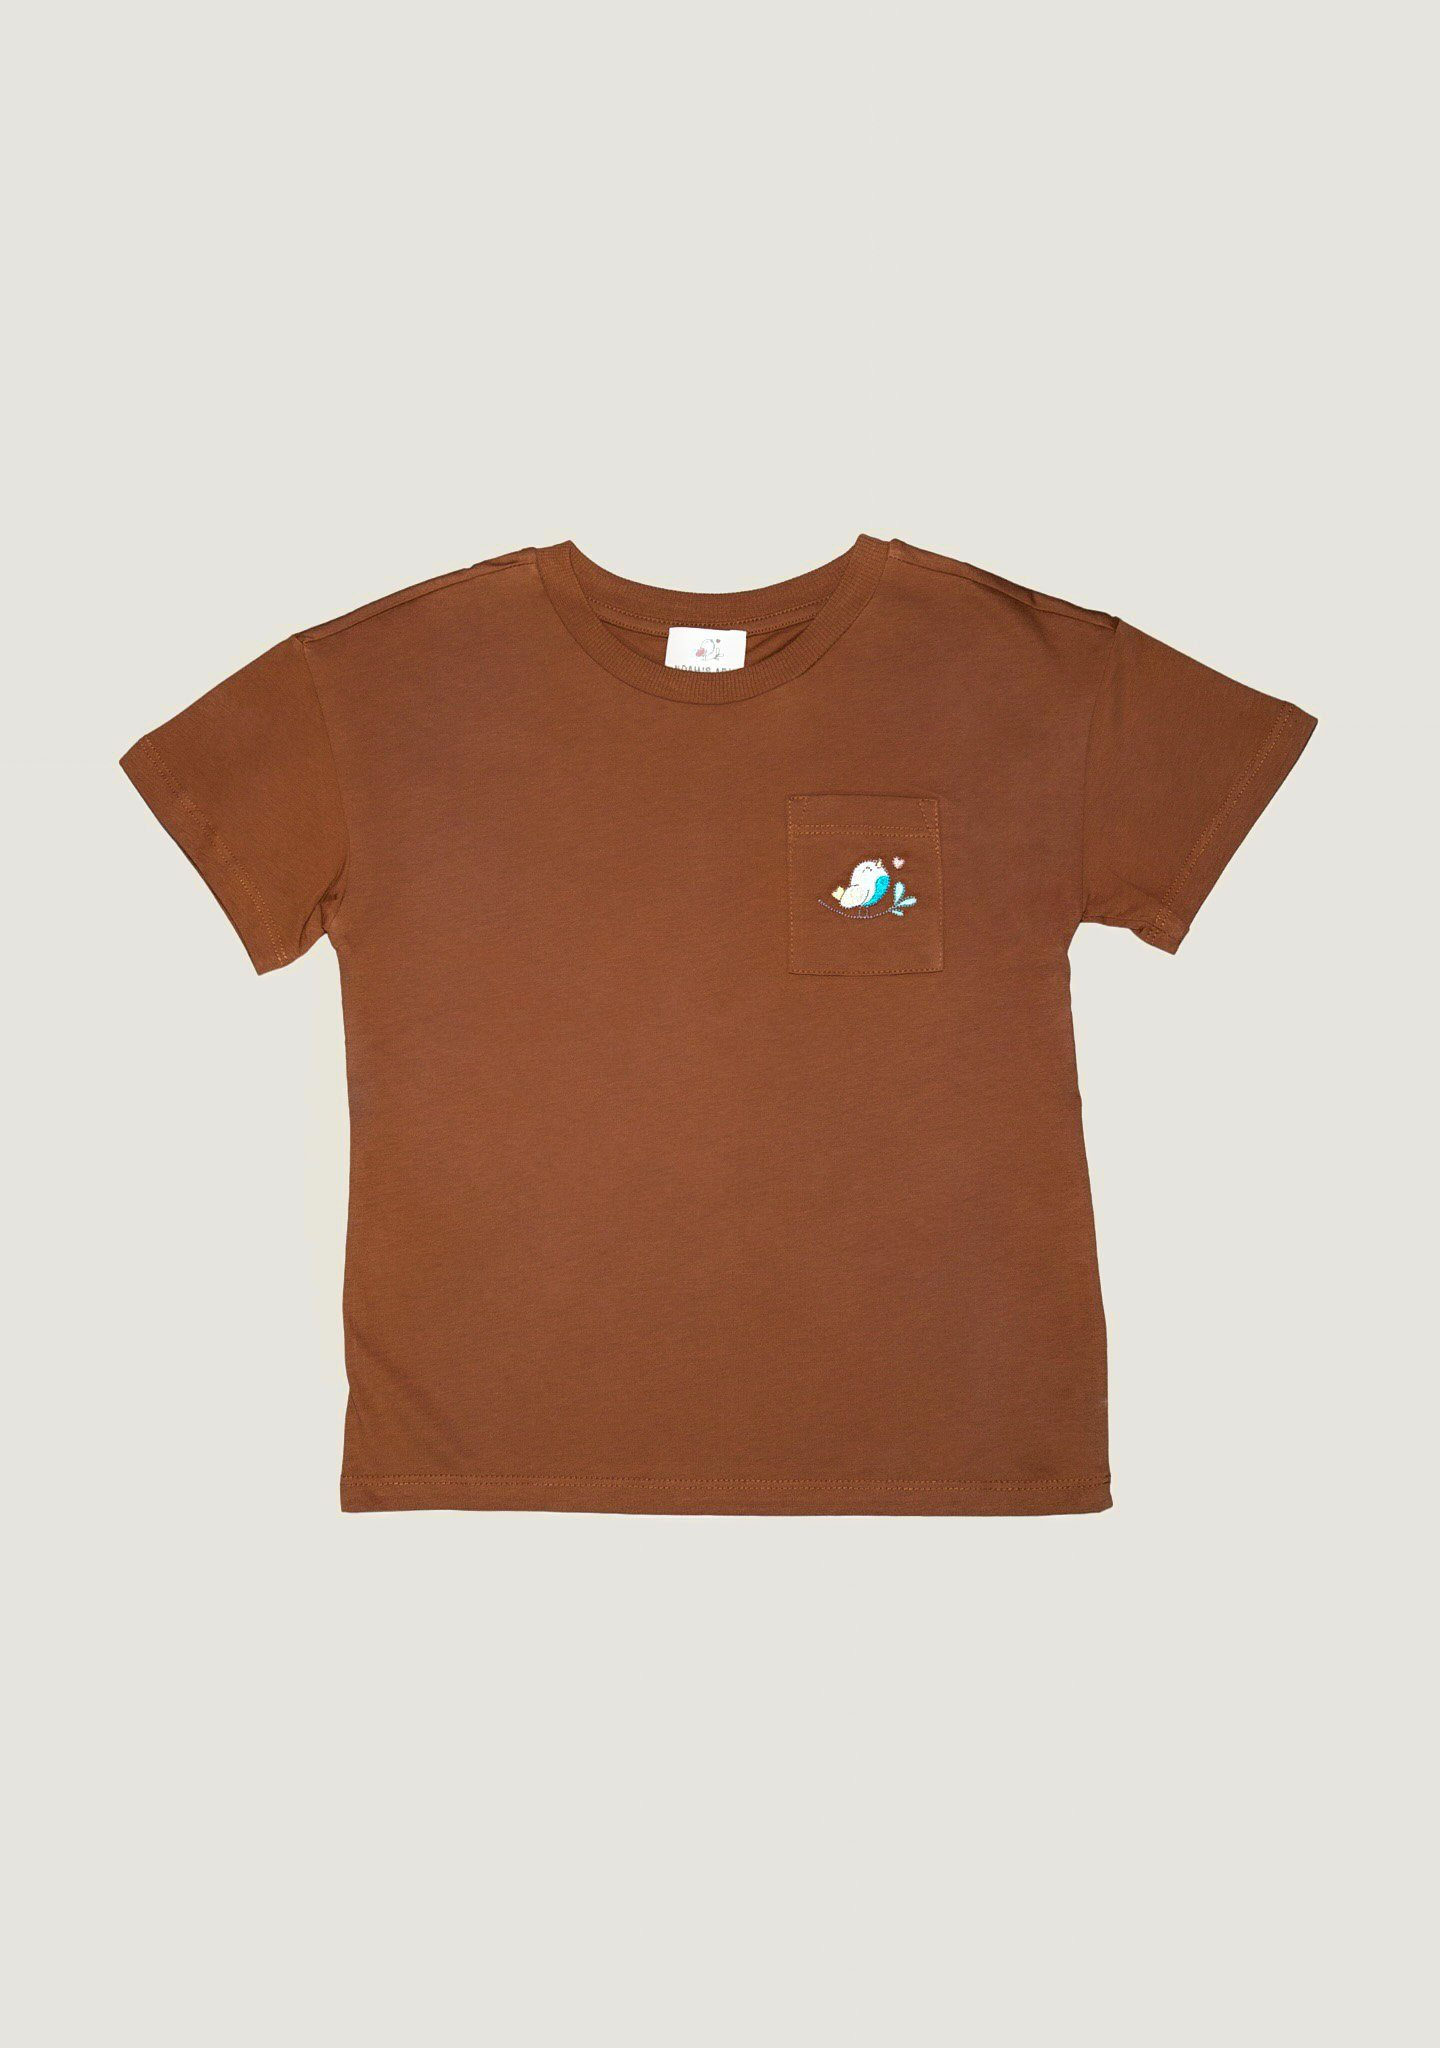 Noah's Ark aus Kinder aus Baumwolle Shirt T-Shirt Unifarbe, unisex, Kastanienbraun in für 100% Baumwolle Brusttasche mit